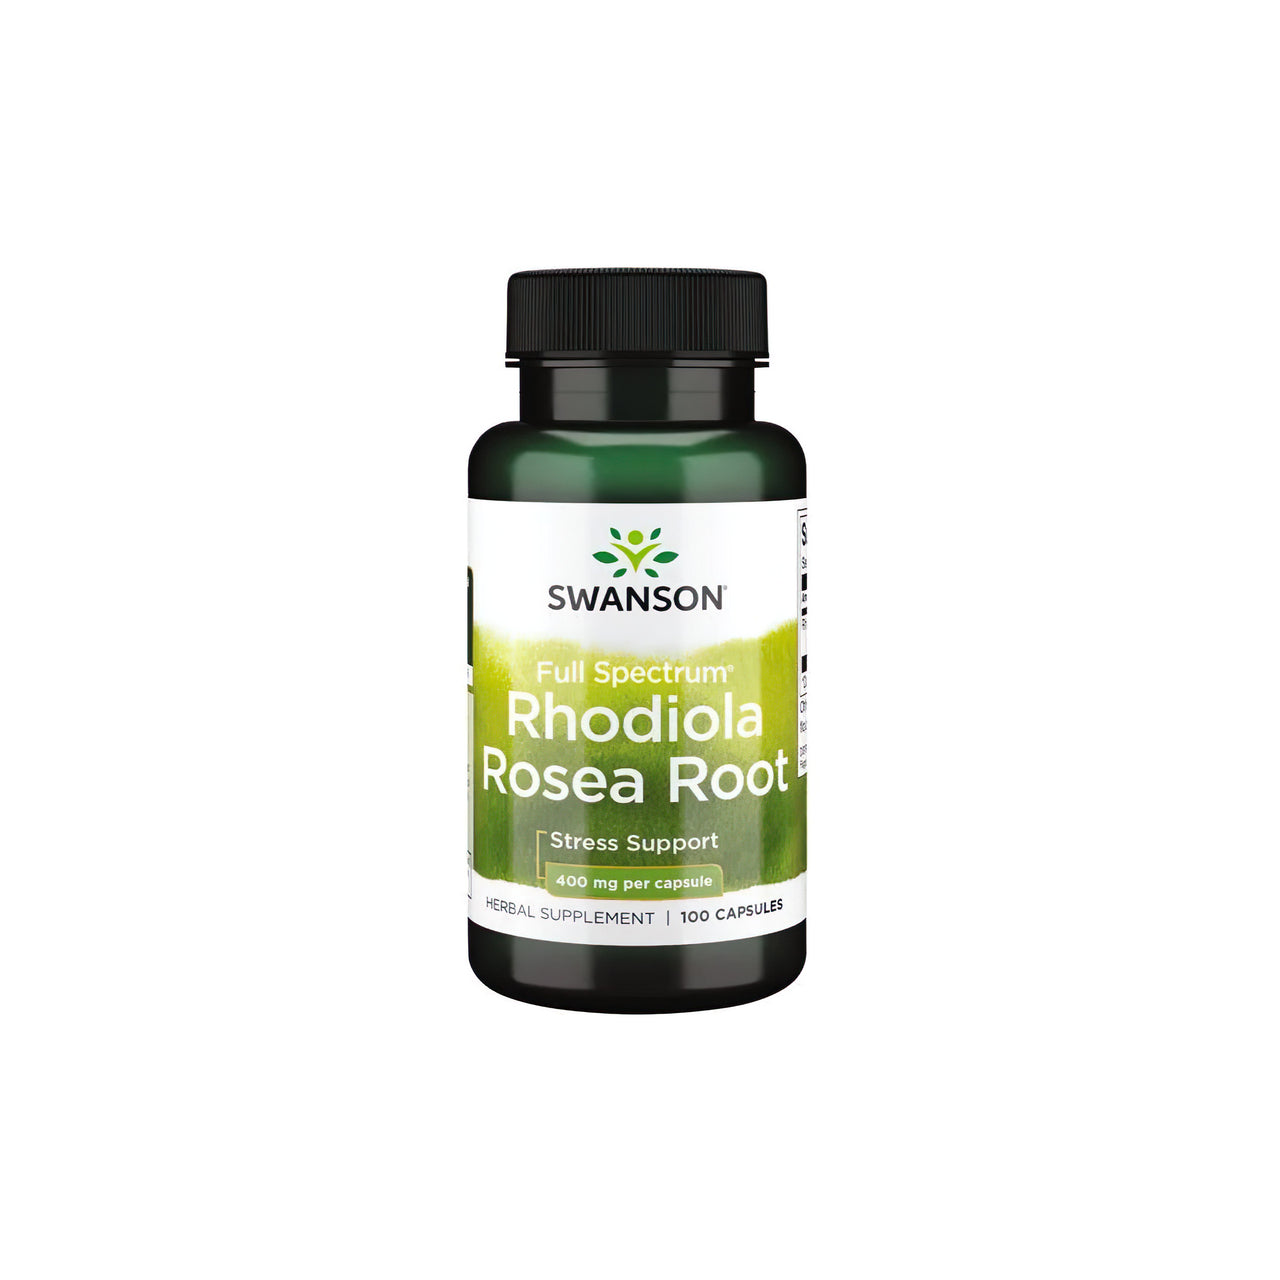 Swanson Rhodiola Rosea Root 400 mg 100 Capsule, un'erba adattogena nota per combattere lo stress.